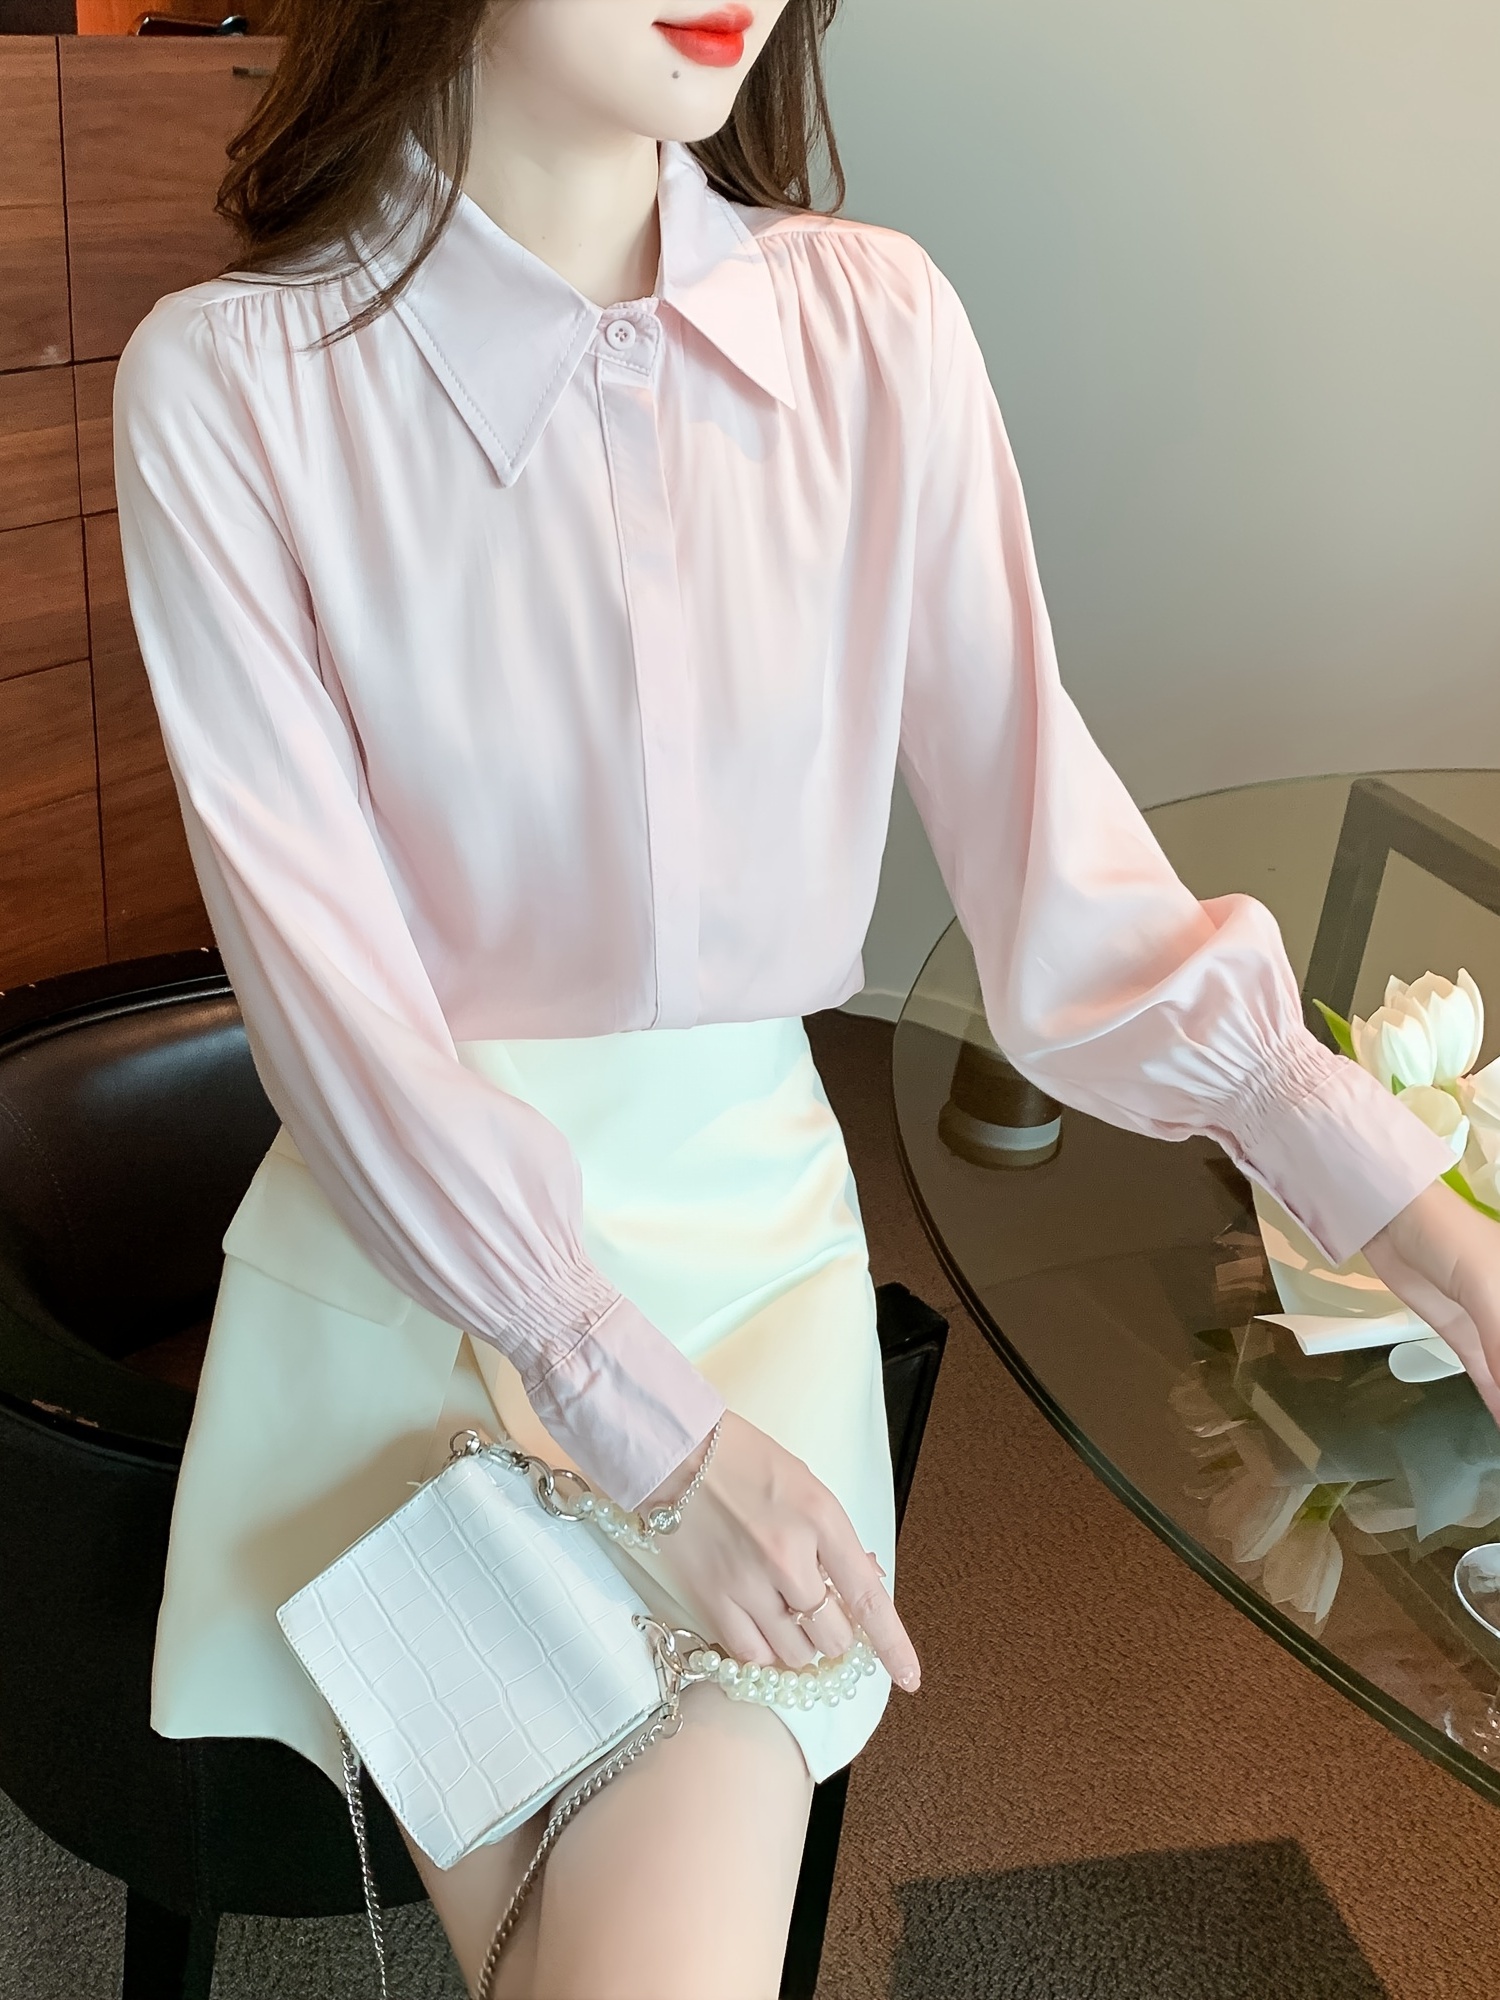 Men's Zipper Dress Shirts Long Sleeve Button Down Half Hidden Zip Slim Fit  Shirt Wrinkle-Free Stretch Tops for Work Wedding